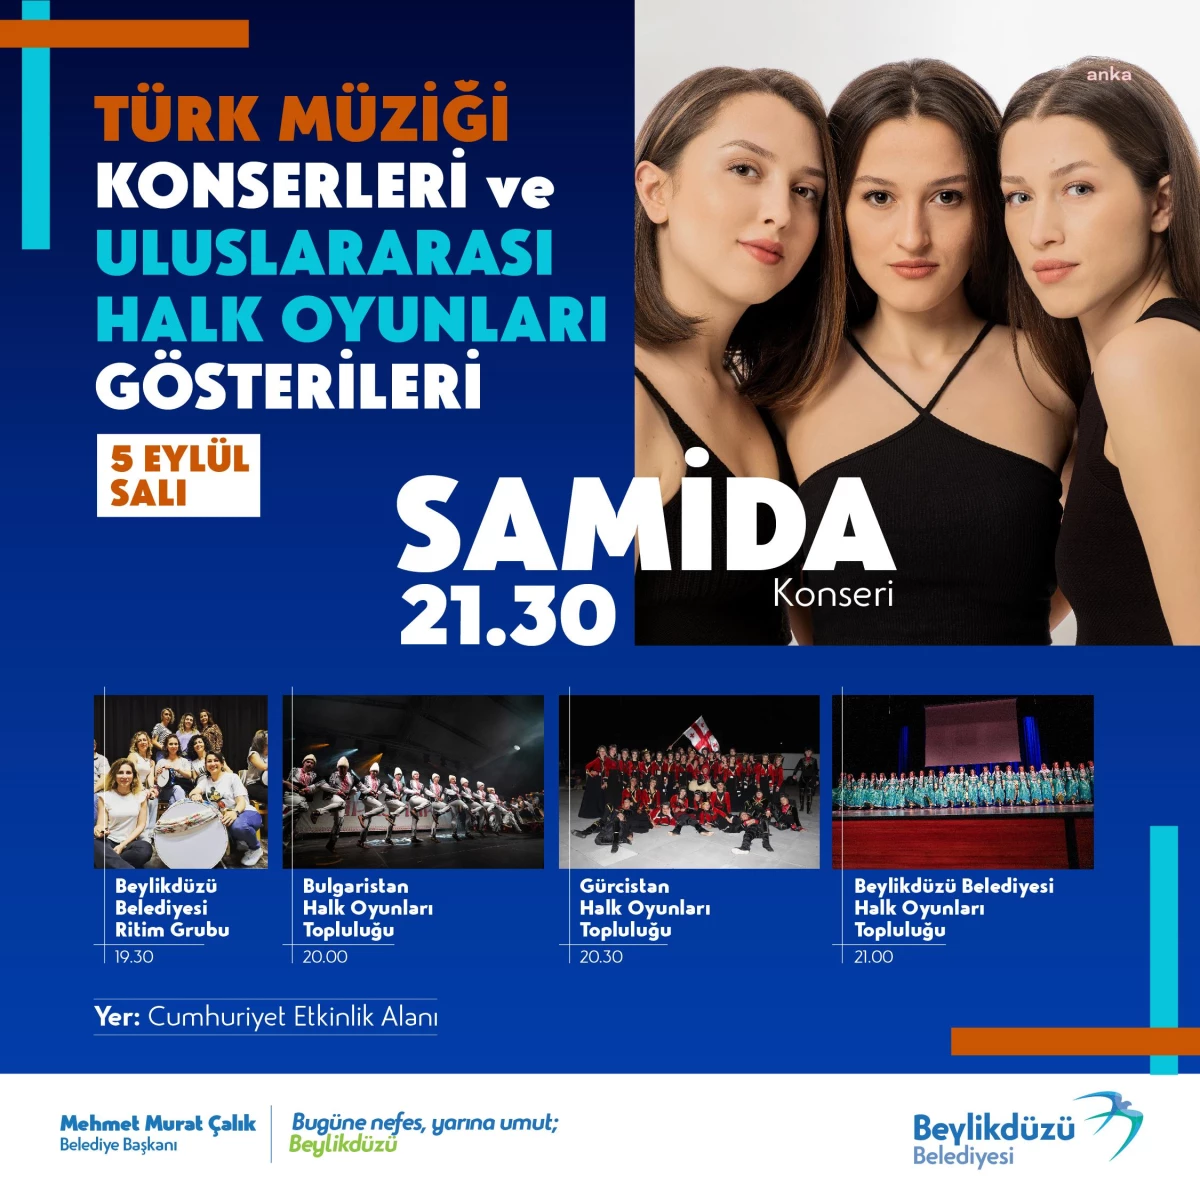 Beylikdüzü Belediyesi Türk Müziği Konserleri ve Uluslararası Halk Oyunları Gösterisi